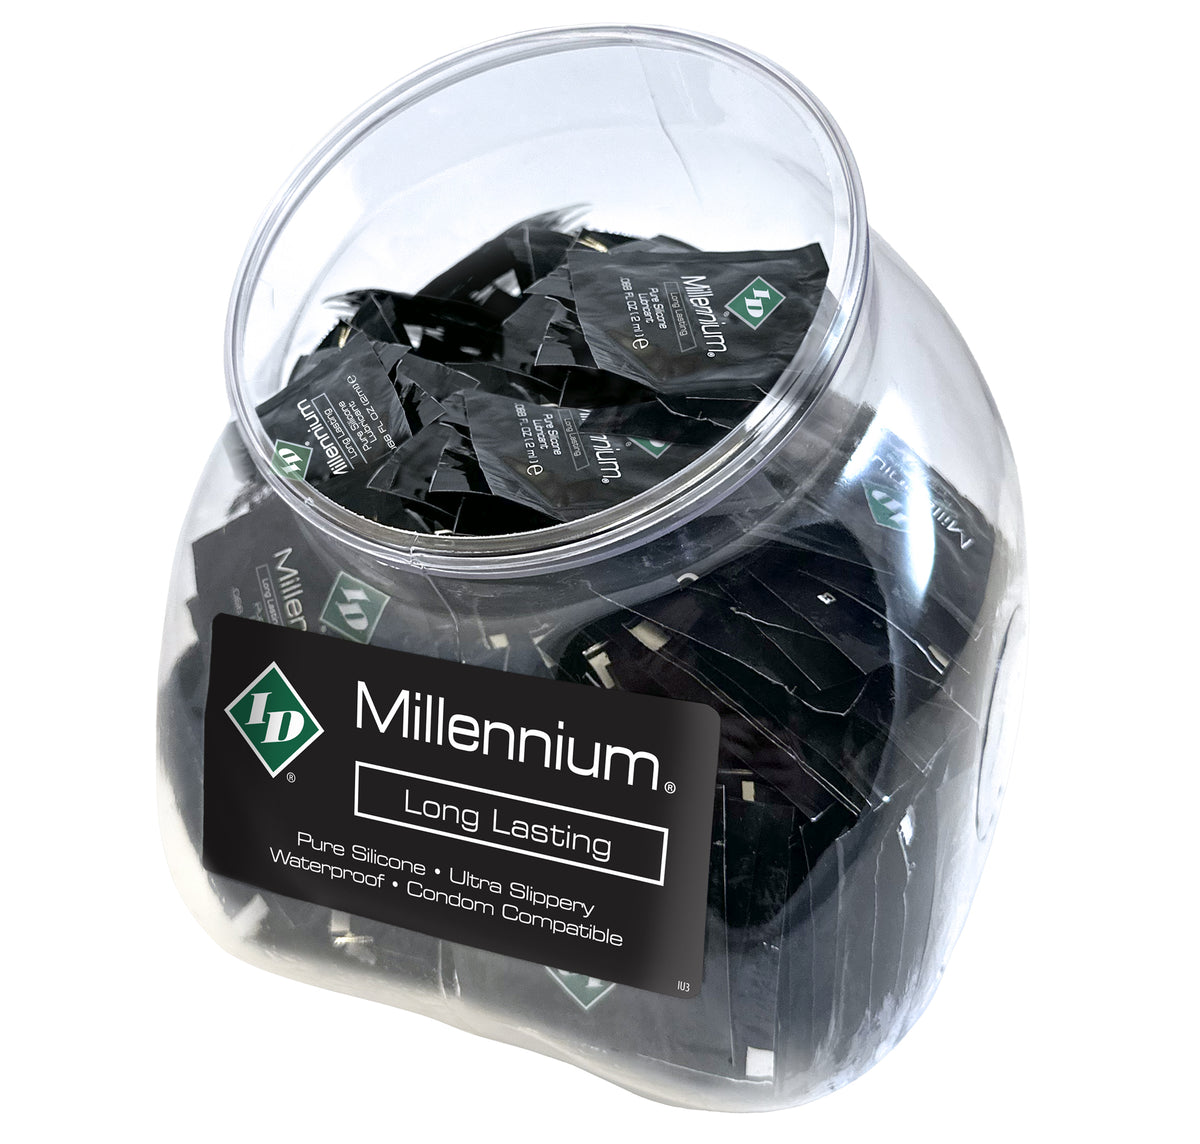 Tarro Aluminio Millennium 2 ml